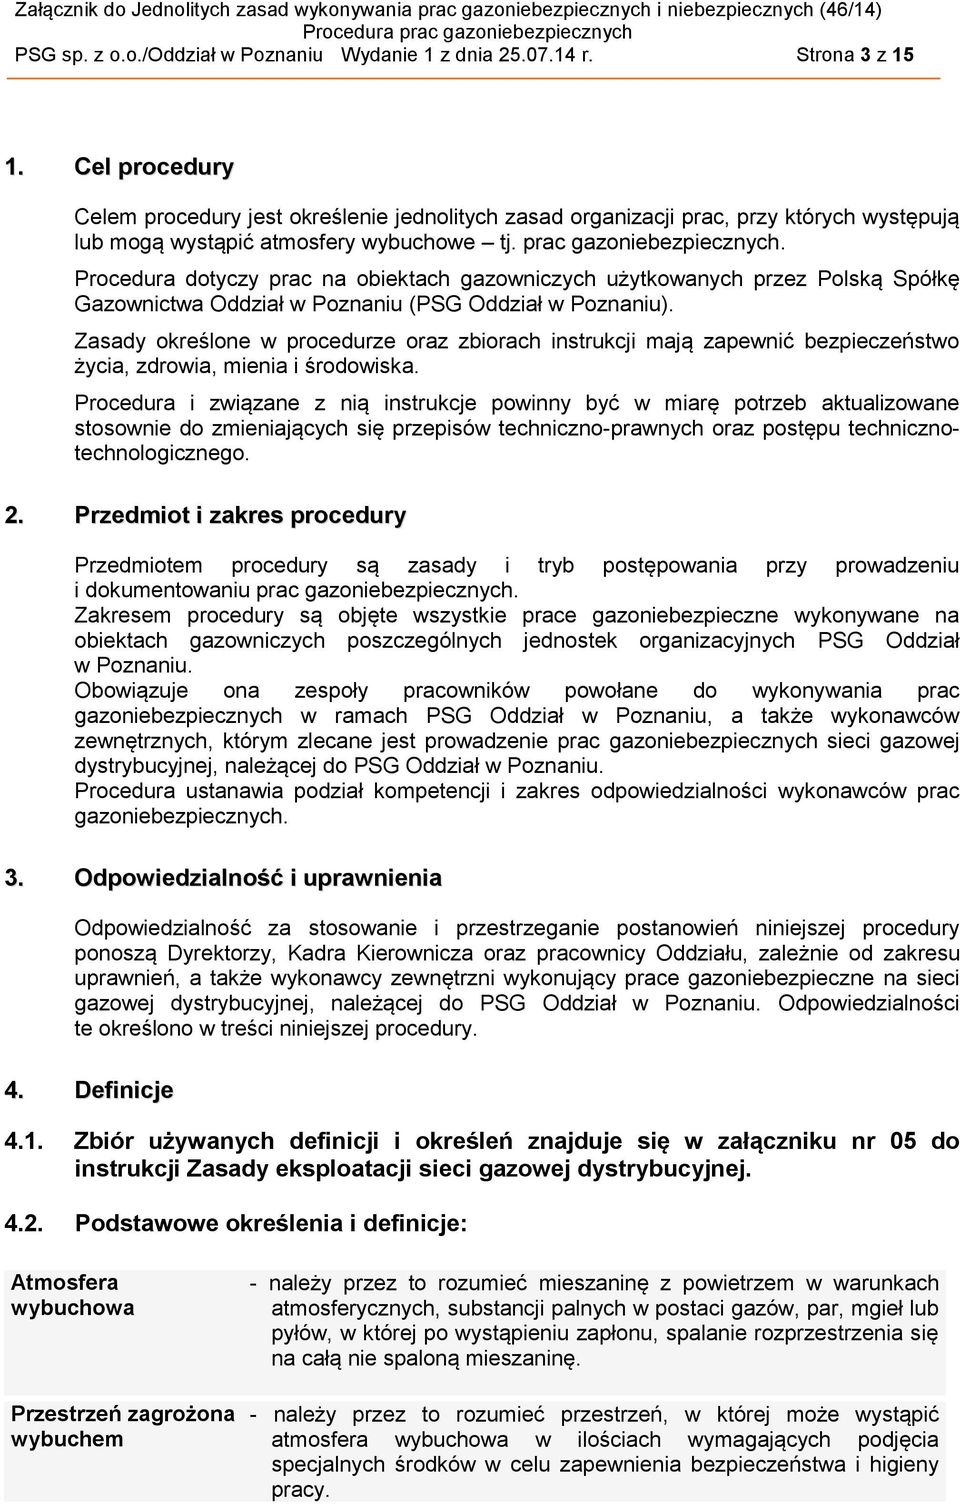 Procedura dotyczy prac na obiektach gazowniczych użytkowanych przez Polską Spółkę Gazownictwa Oddział w Poznaniu (PSG Oddział w Poznaniu).